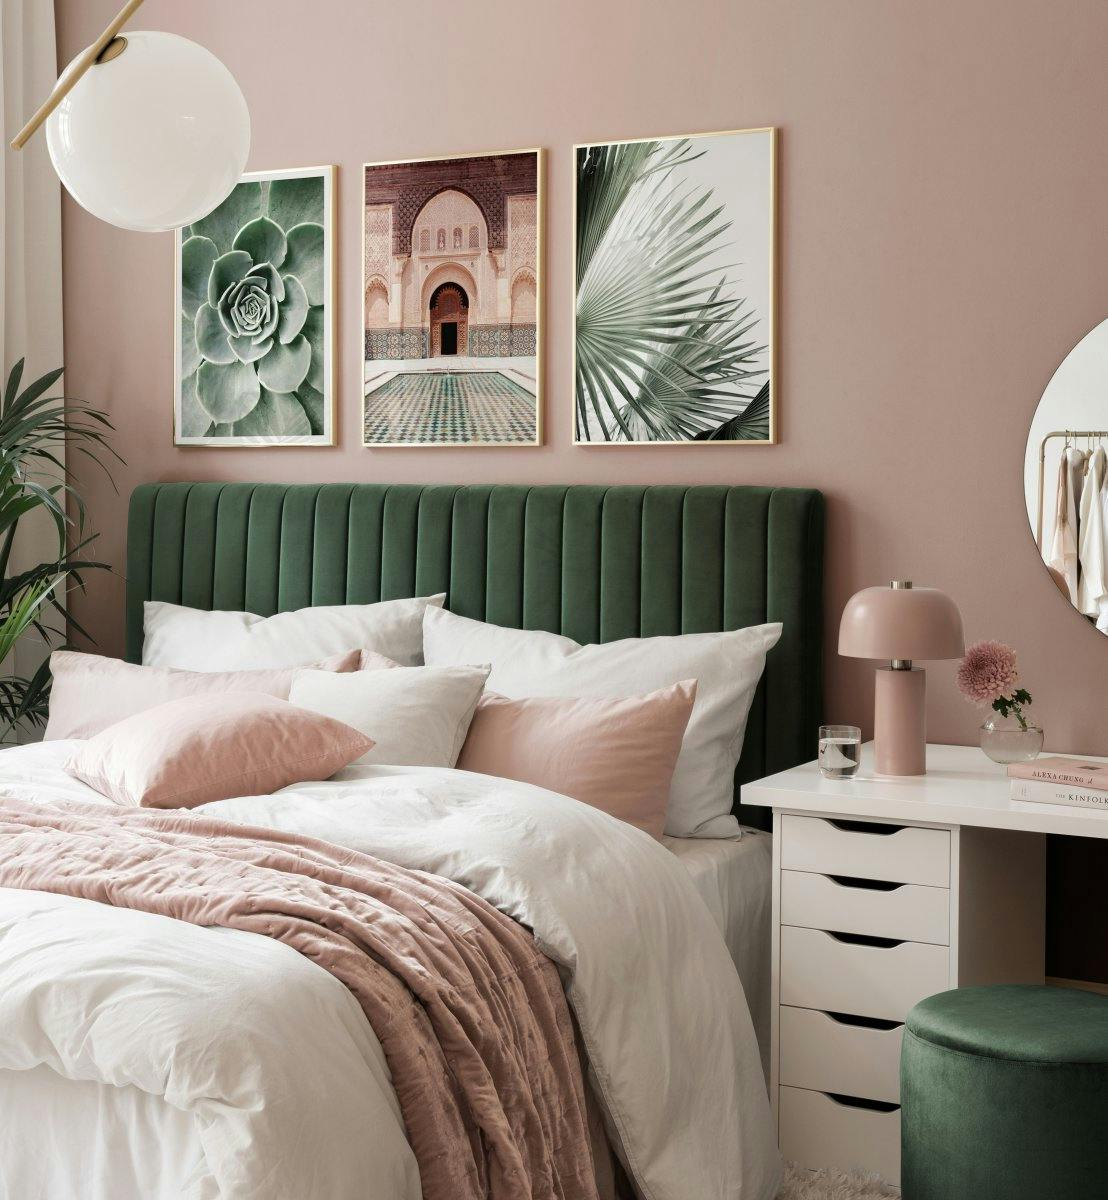 Fotografier av blader og arkitektur i grønt og beige til soverommet